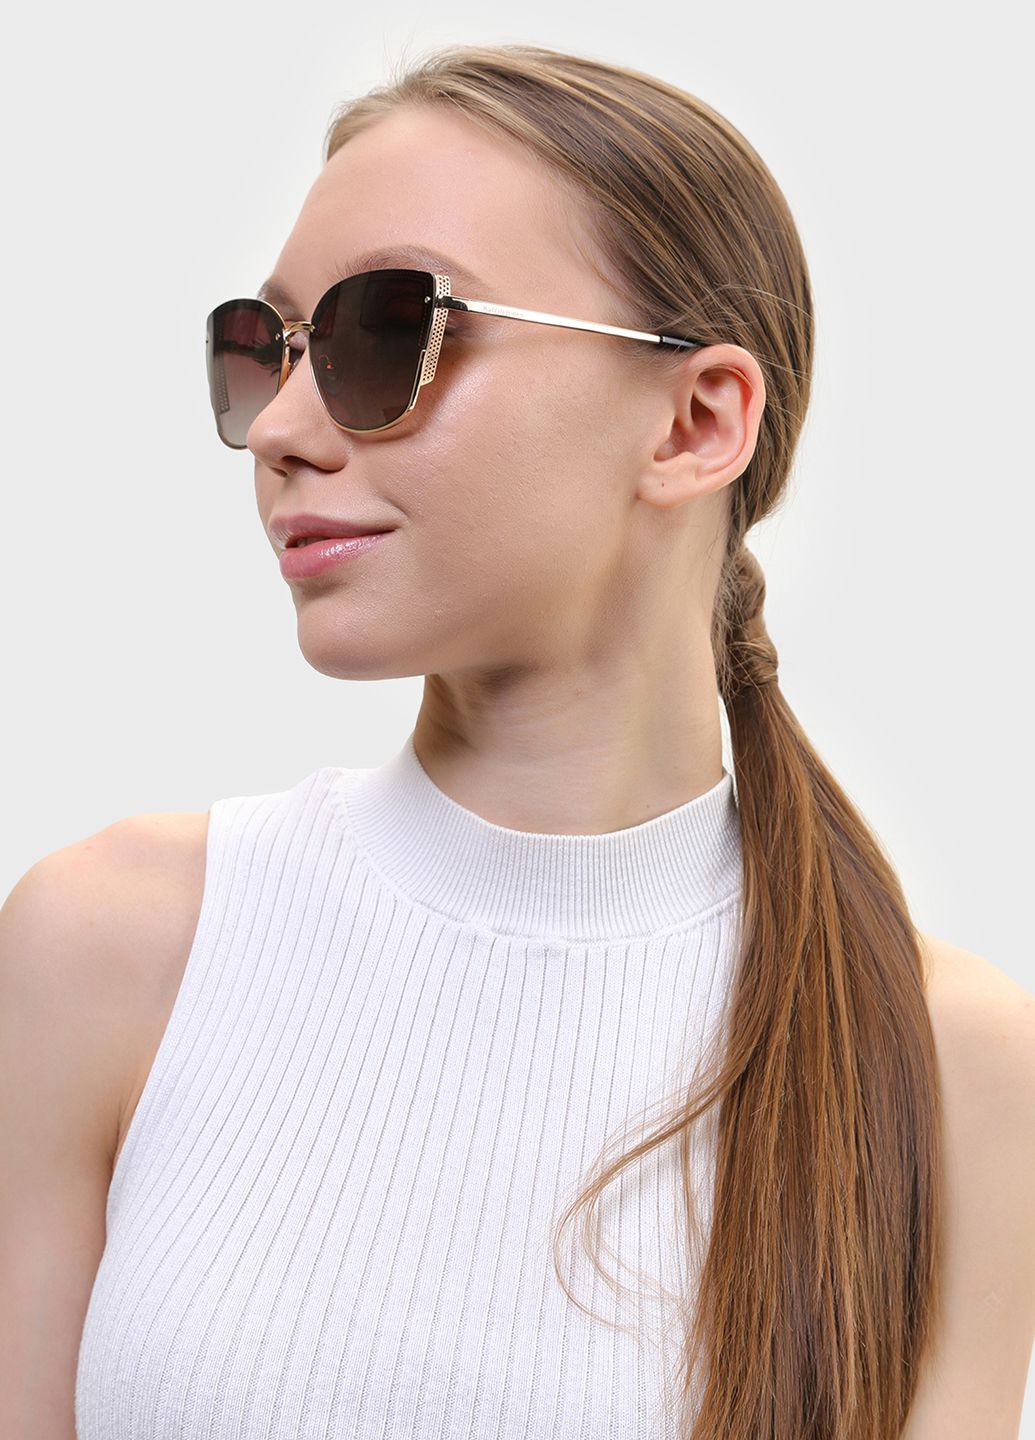 Купить Женские солнцезащитные очки Katrin Jones с поляризацией KJ0848 180052 - Золотистый в интернет-магазине